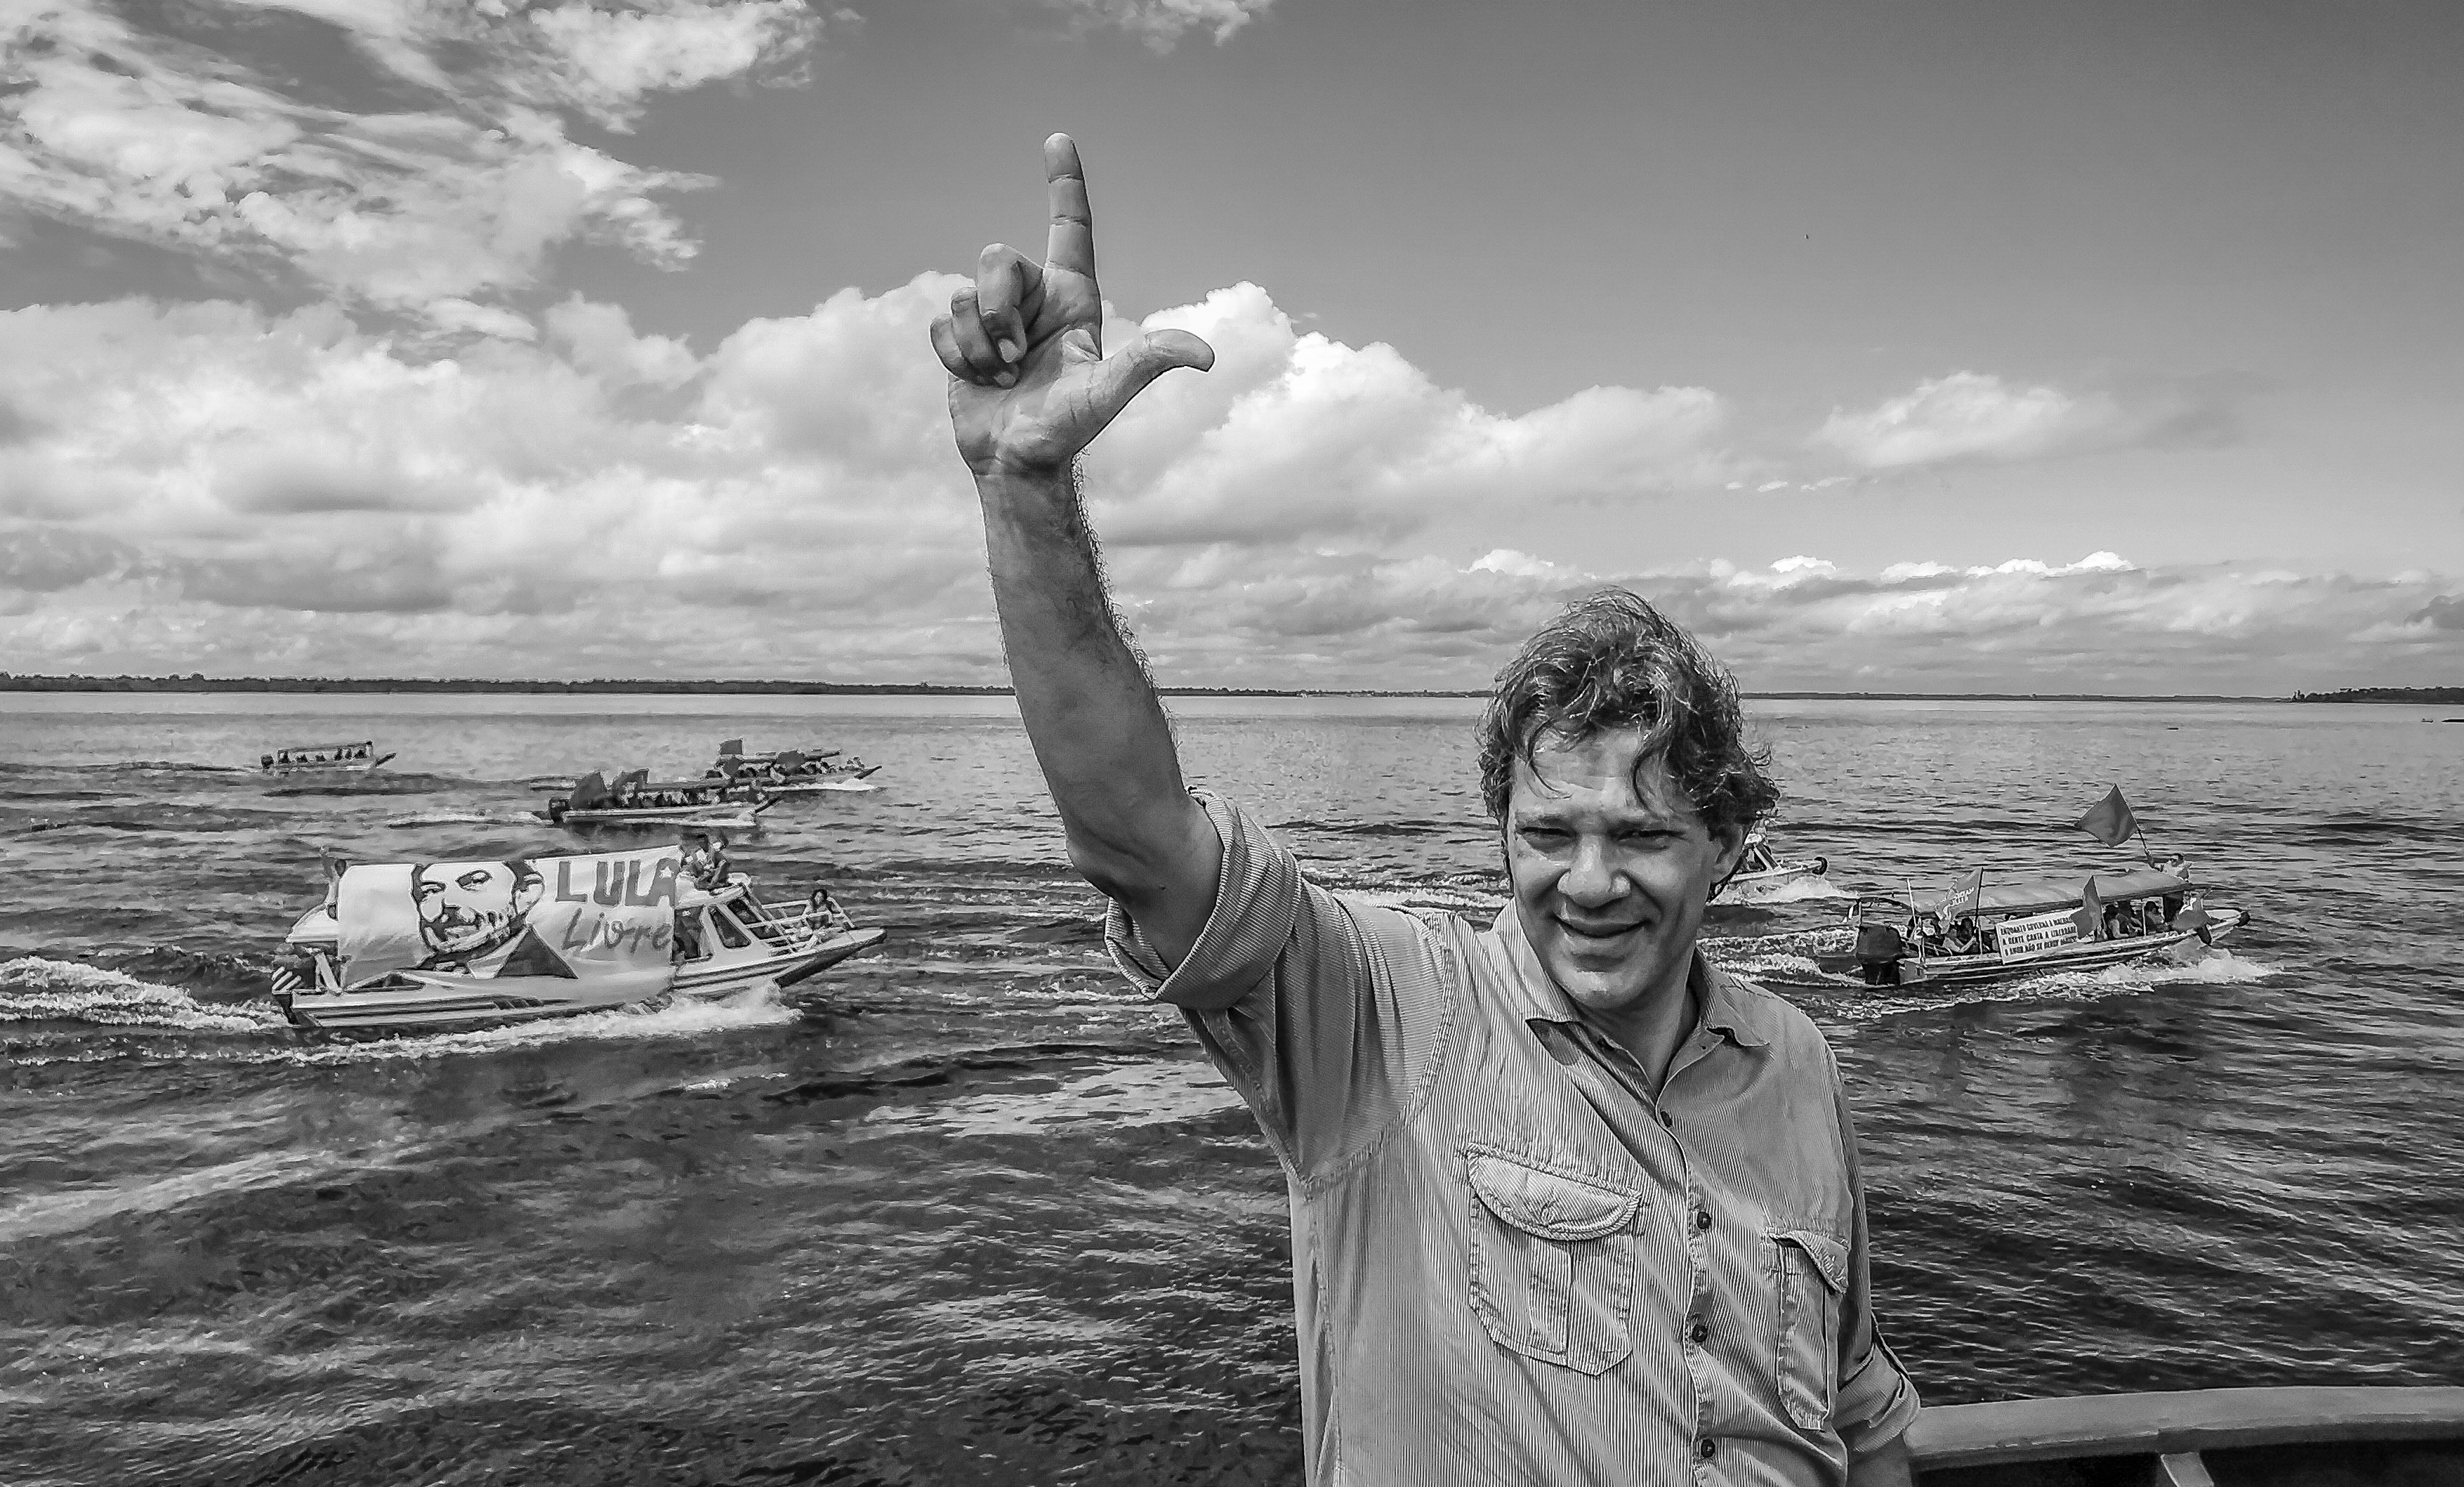 Galeria: Caravana Lula Livre com Fernando Haddad chega ao Amazonas